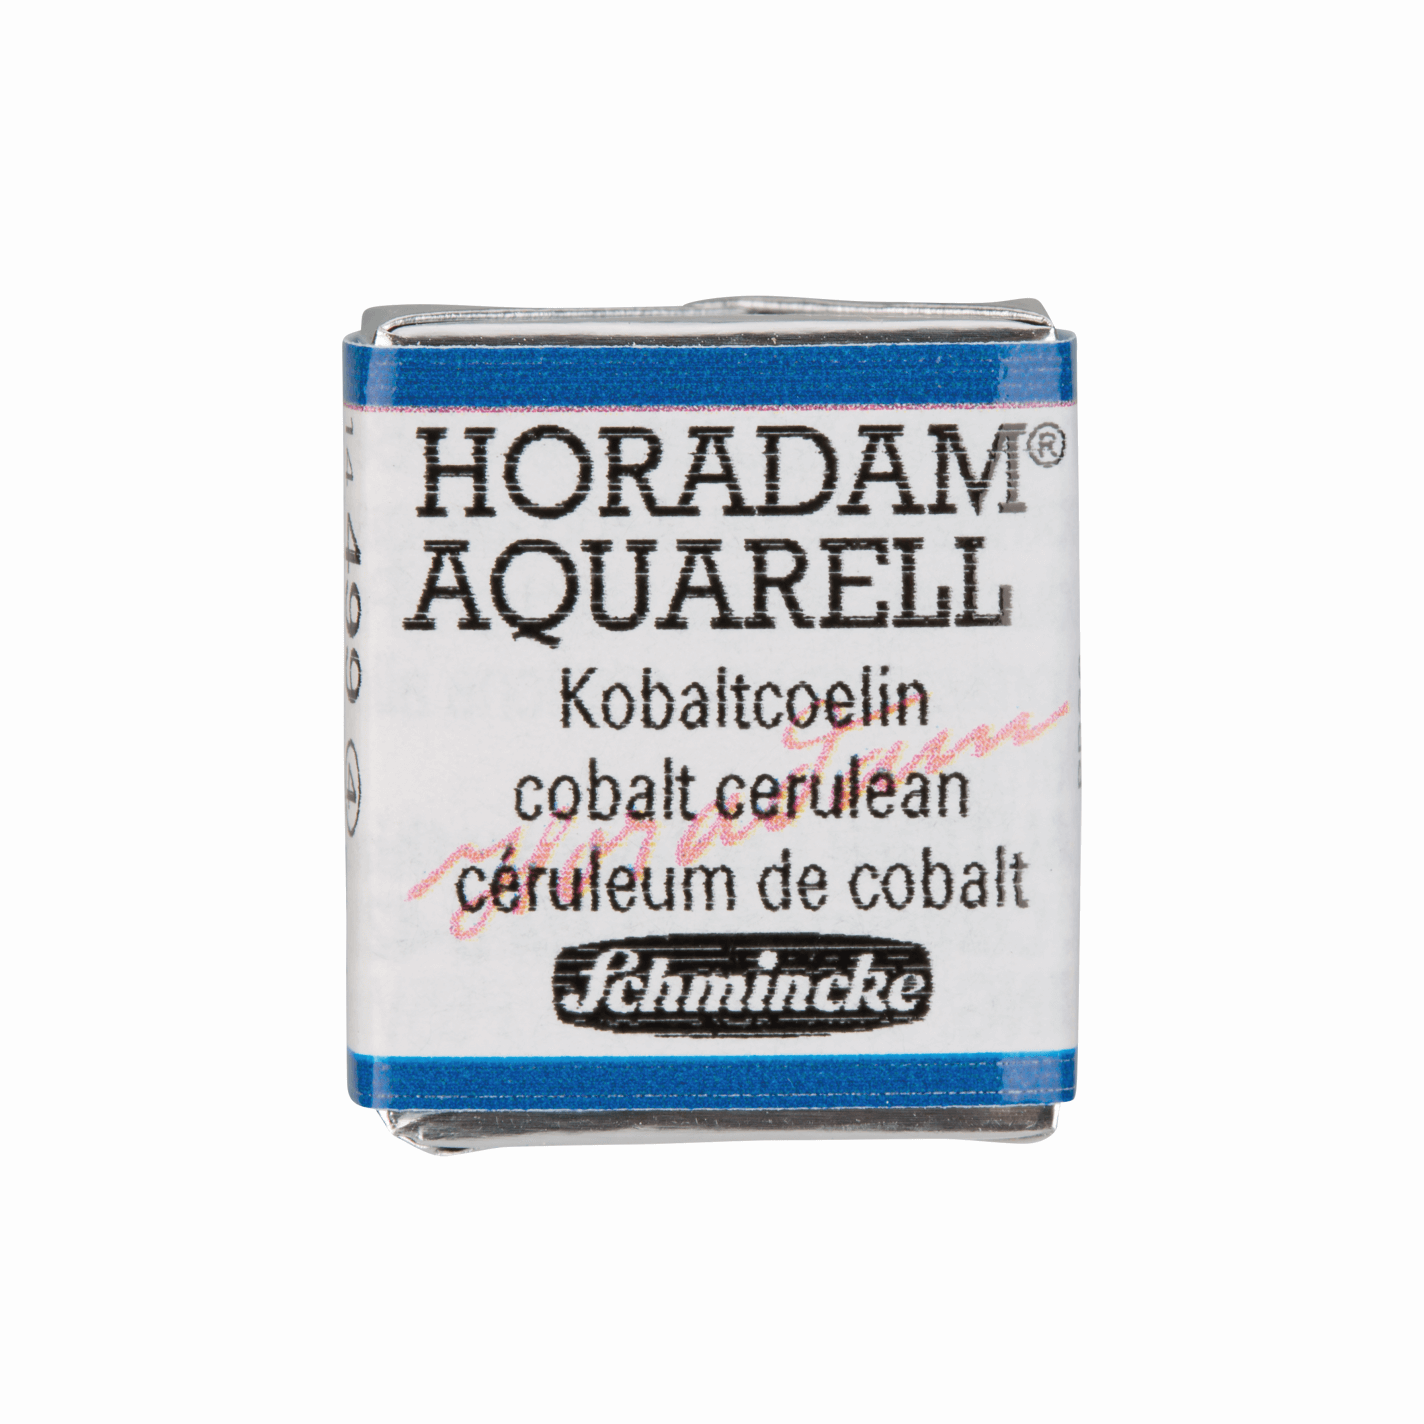 Schmincke Horadam Aquarell pans 1/2 pan Cobalt Cerulean